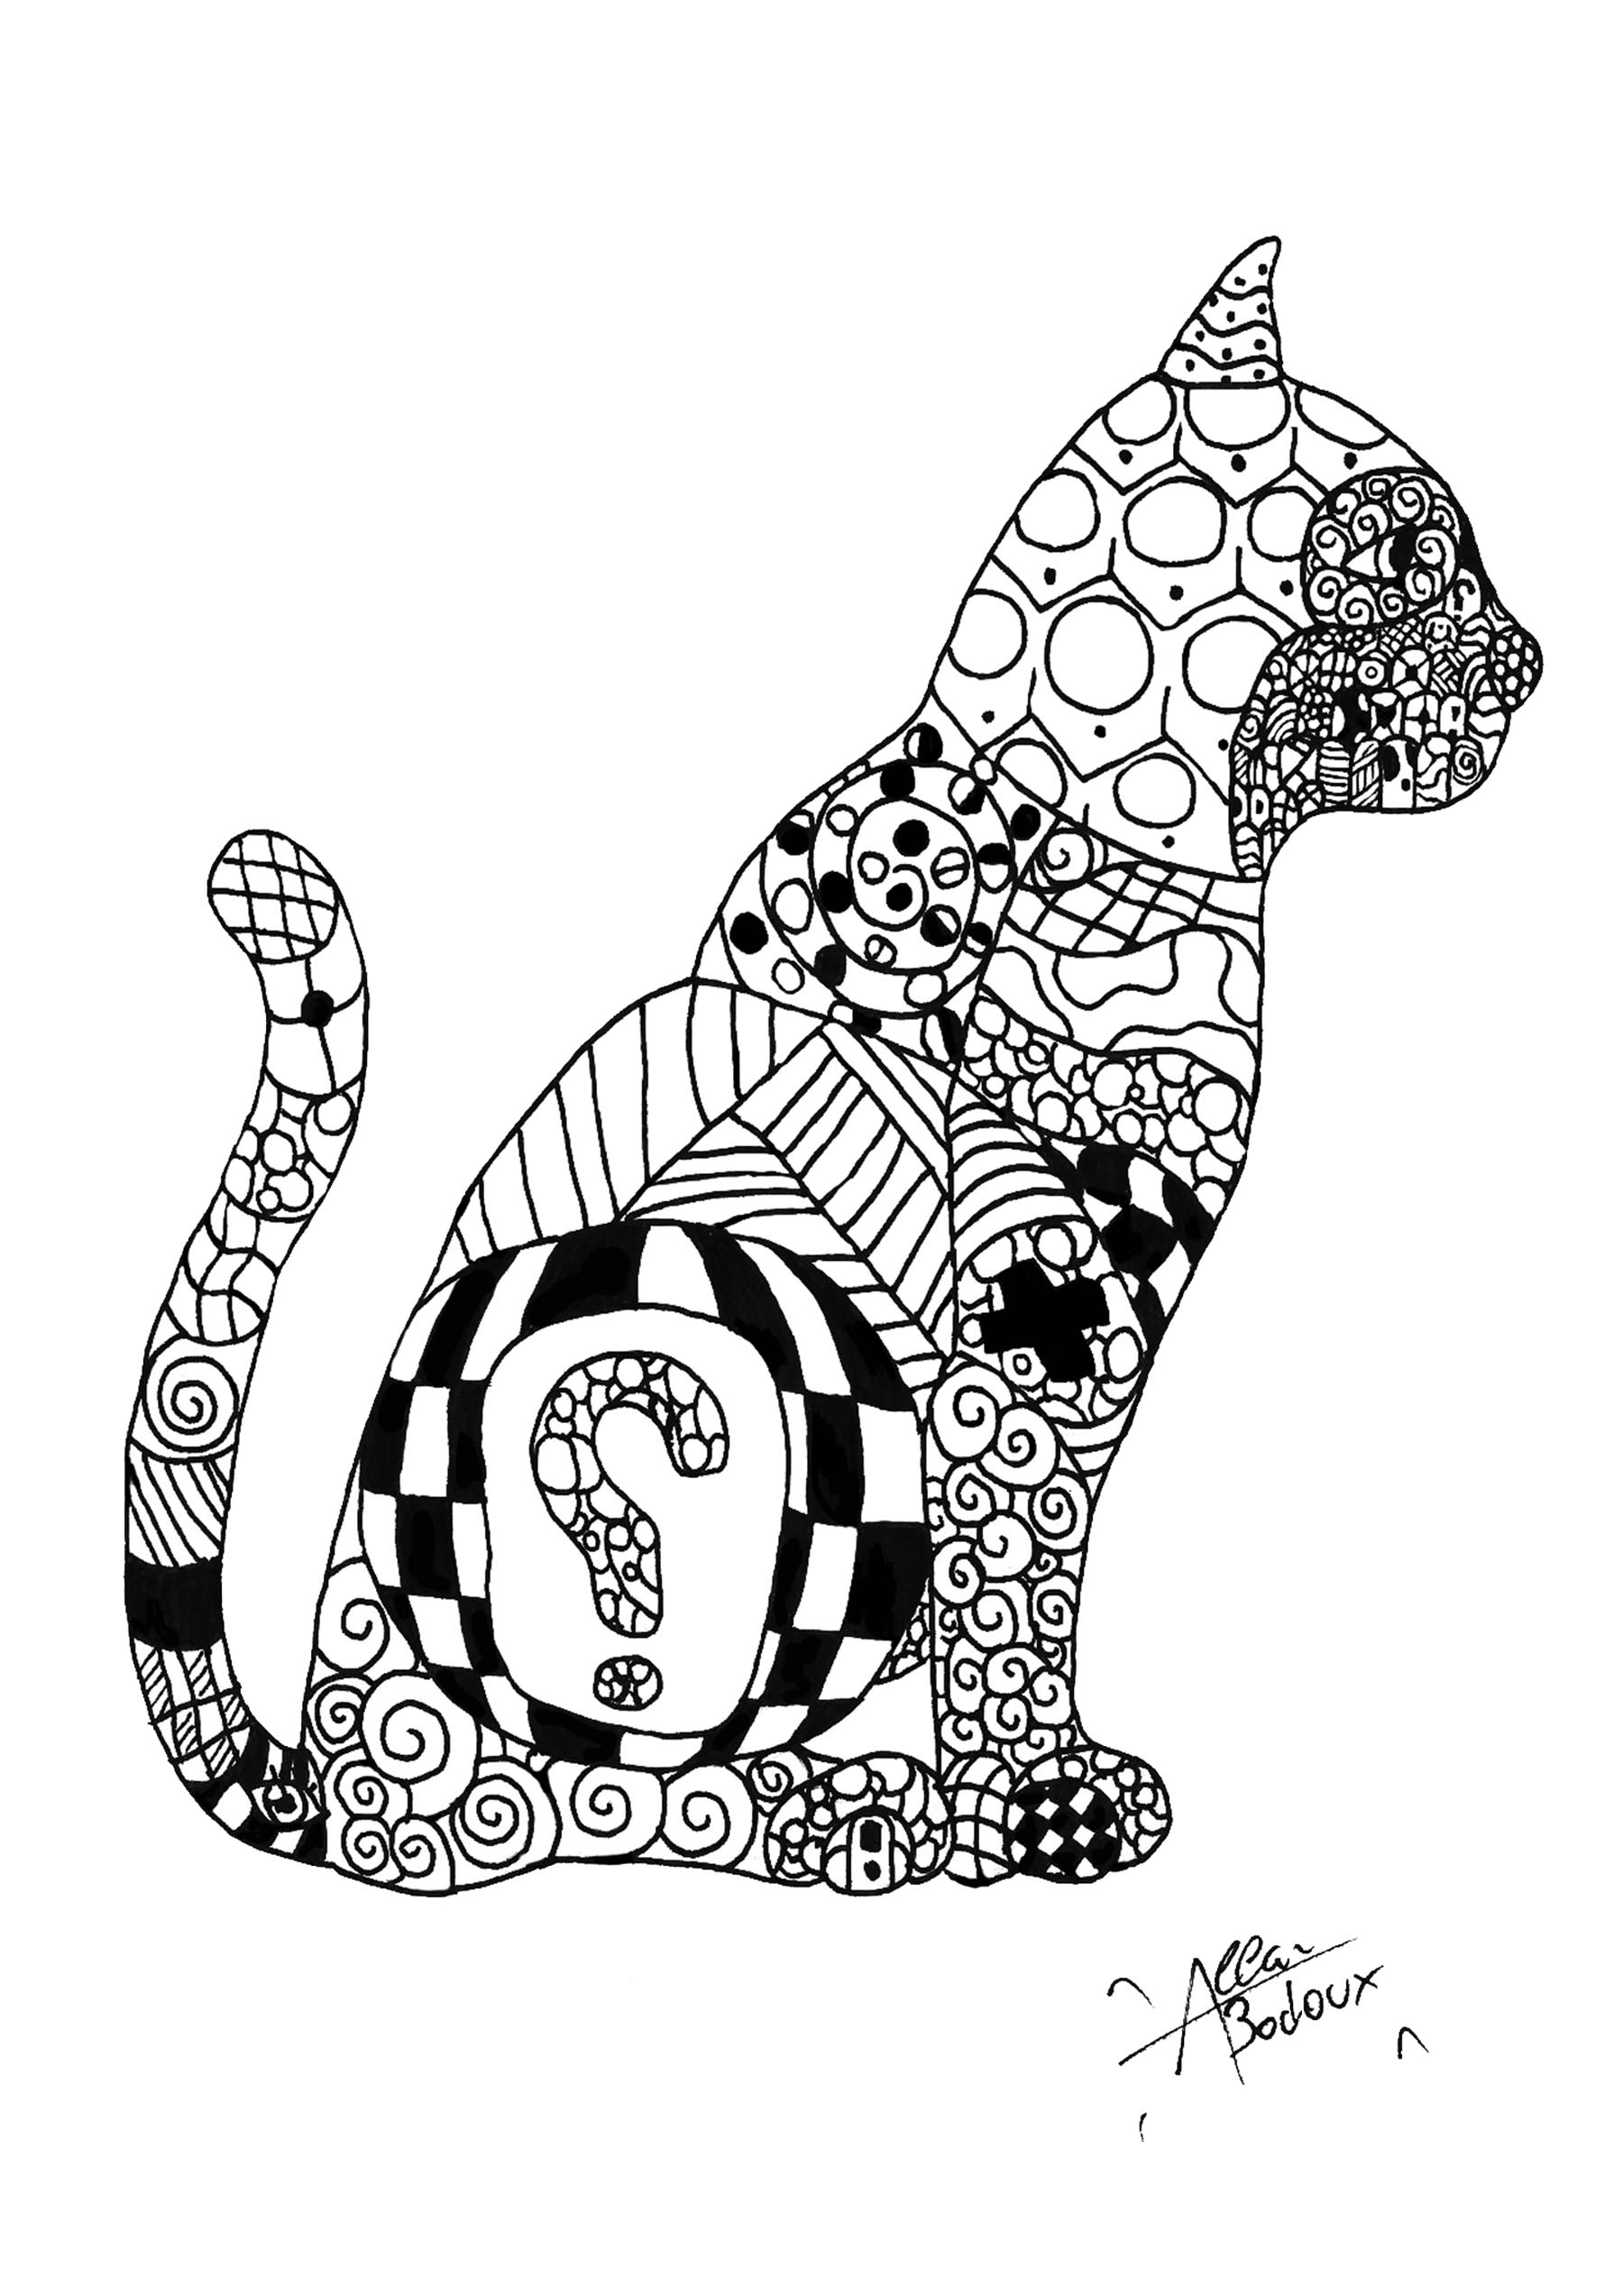 Gato con dibujos, Artista : Allan